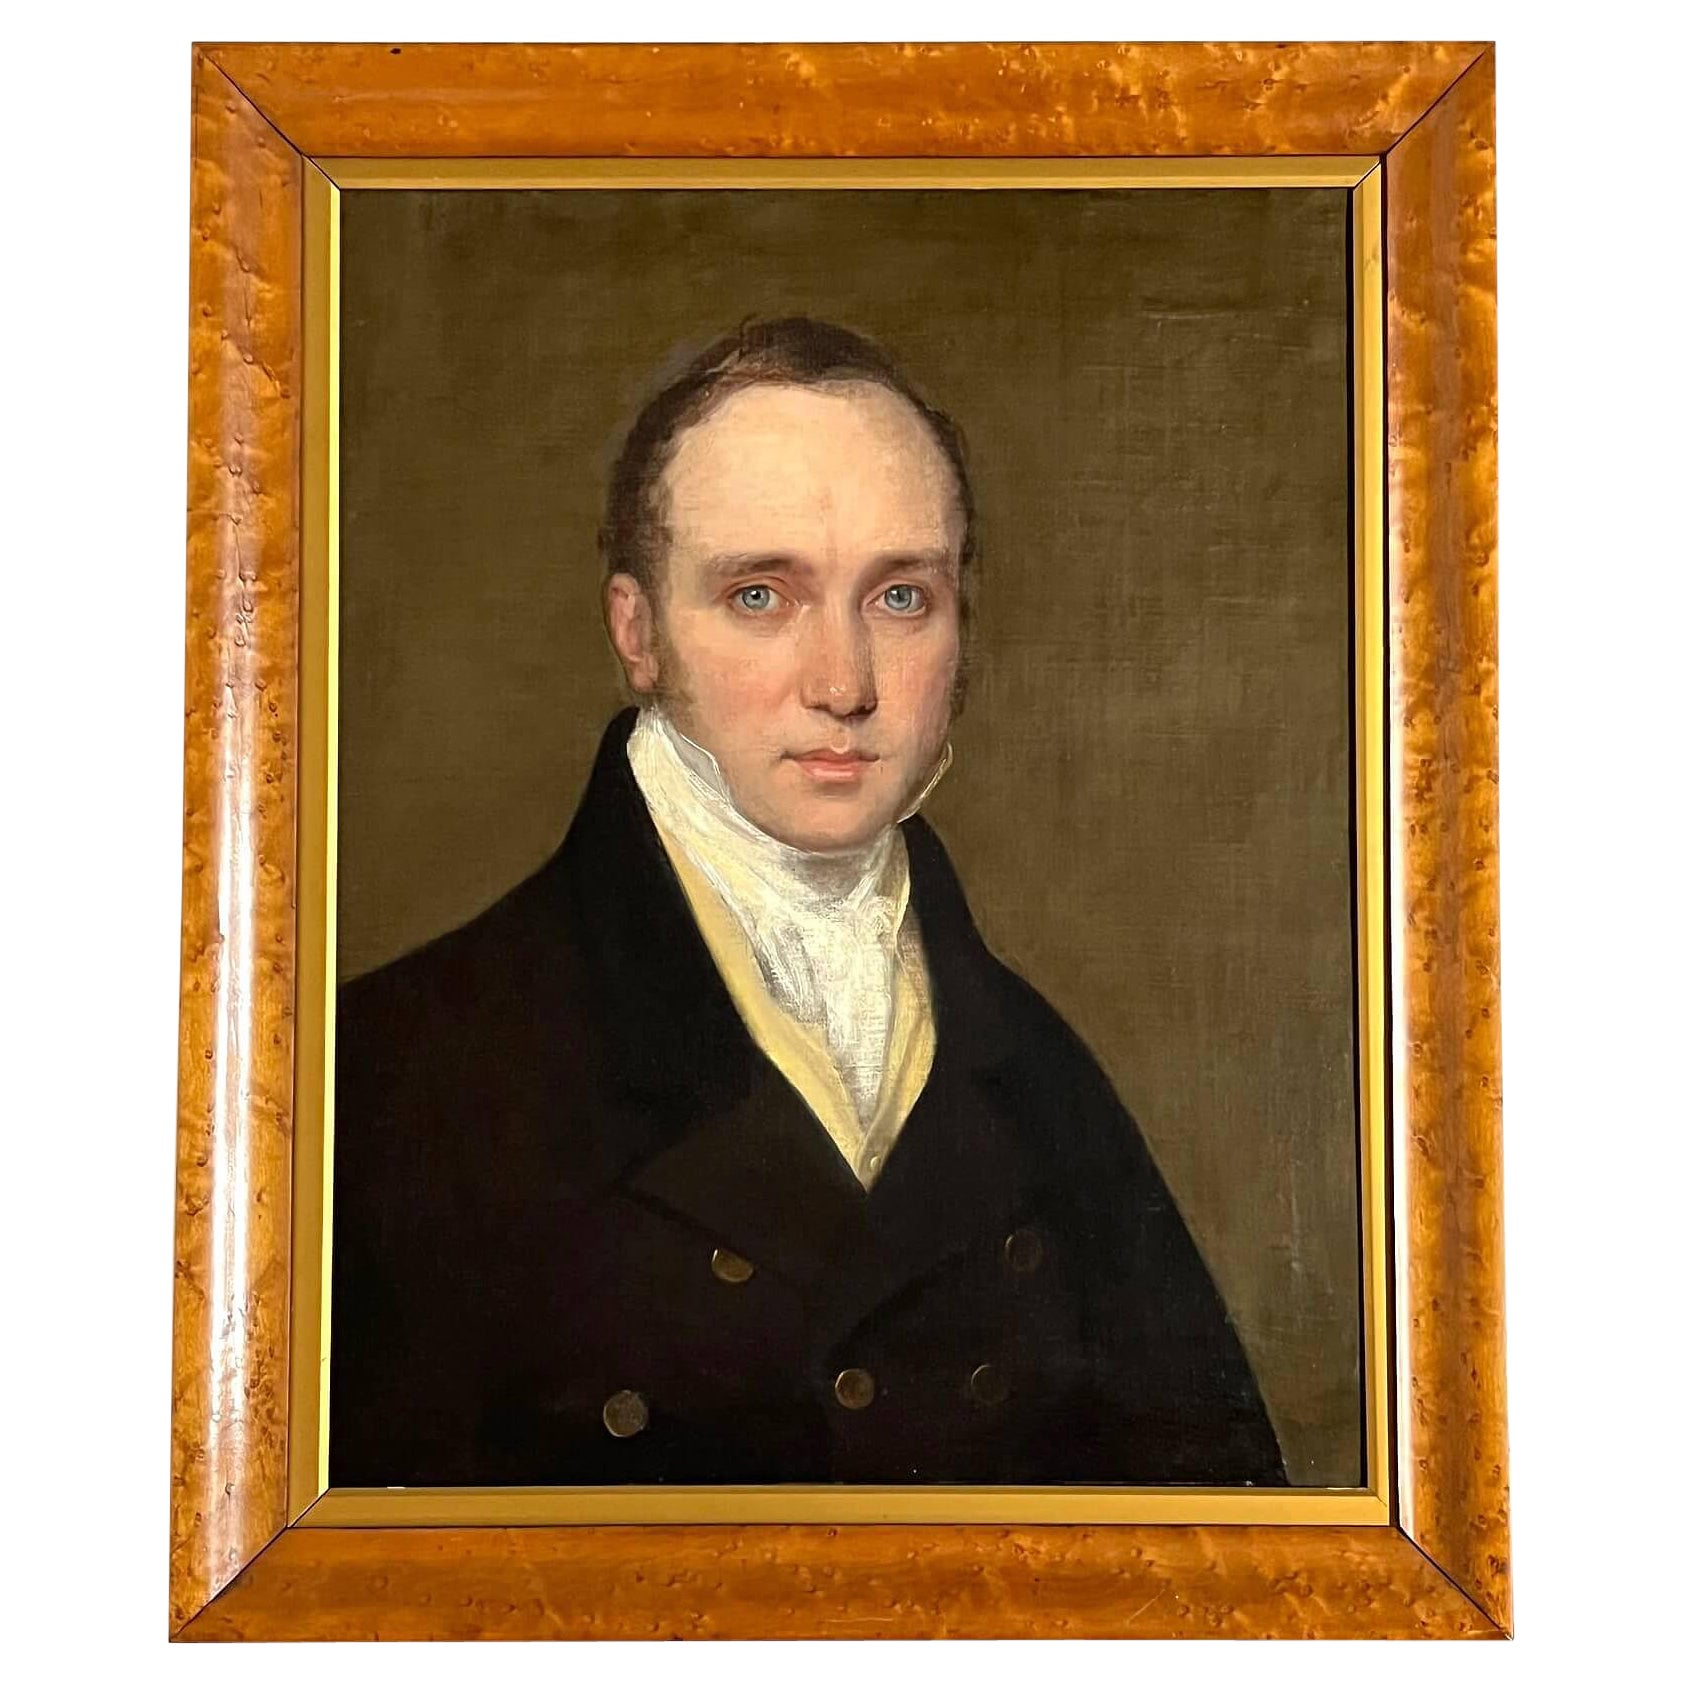 Portrait d'un gentleman aux yeux bleus et perçants, école de Raeburn, vers 1820